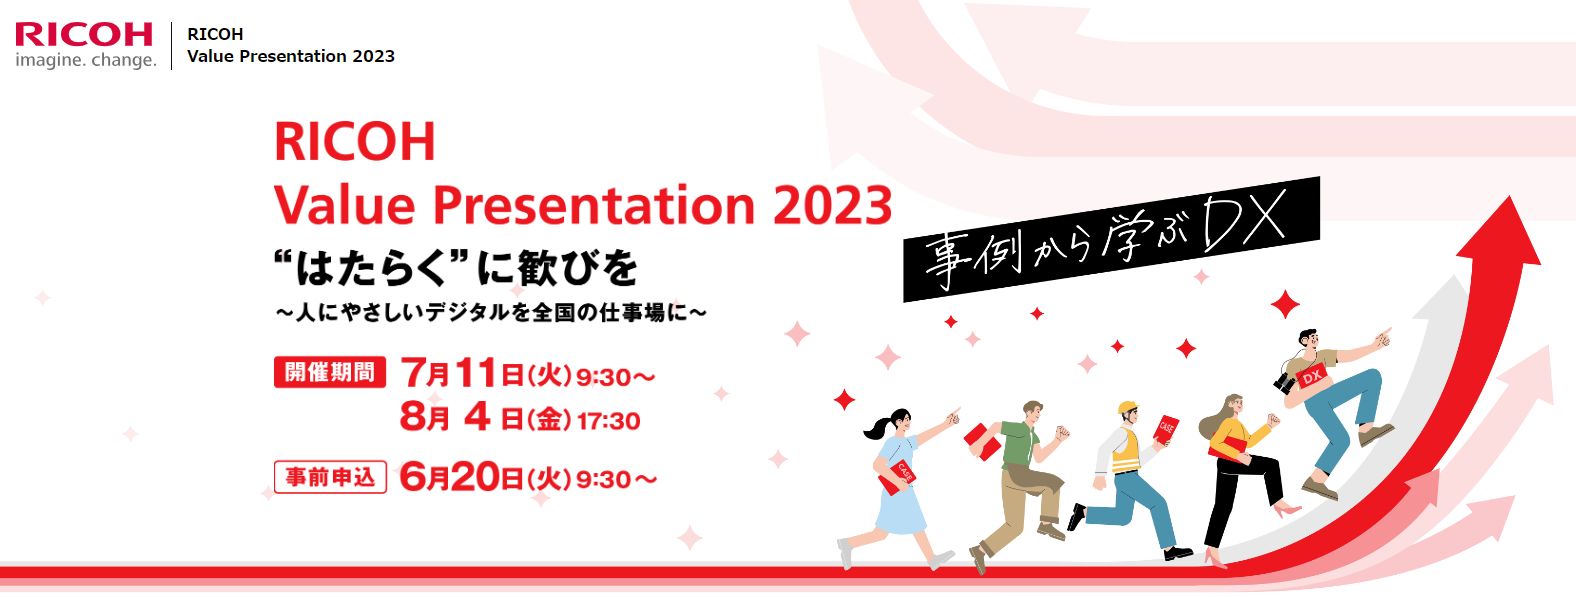 RICOH Value Presentation 2023 開催のお知らせ